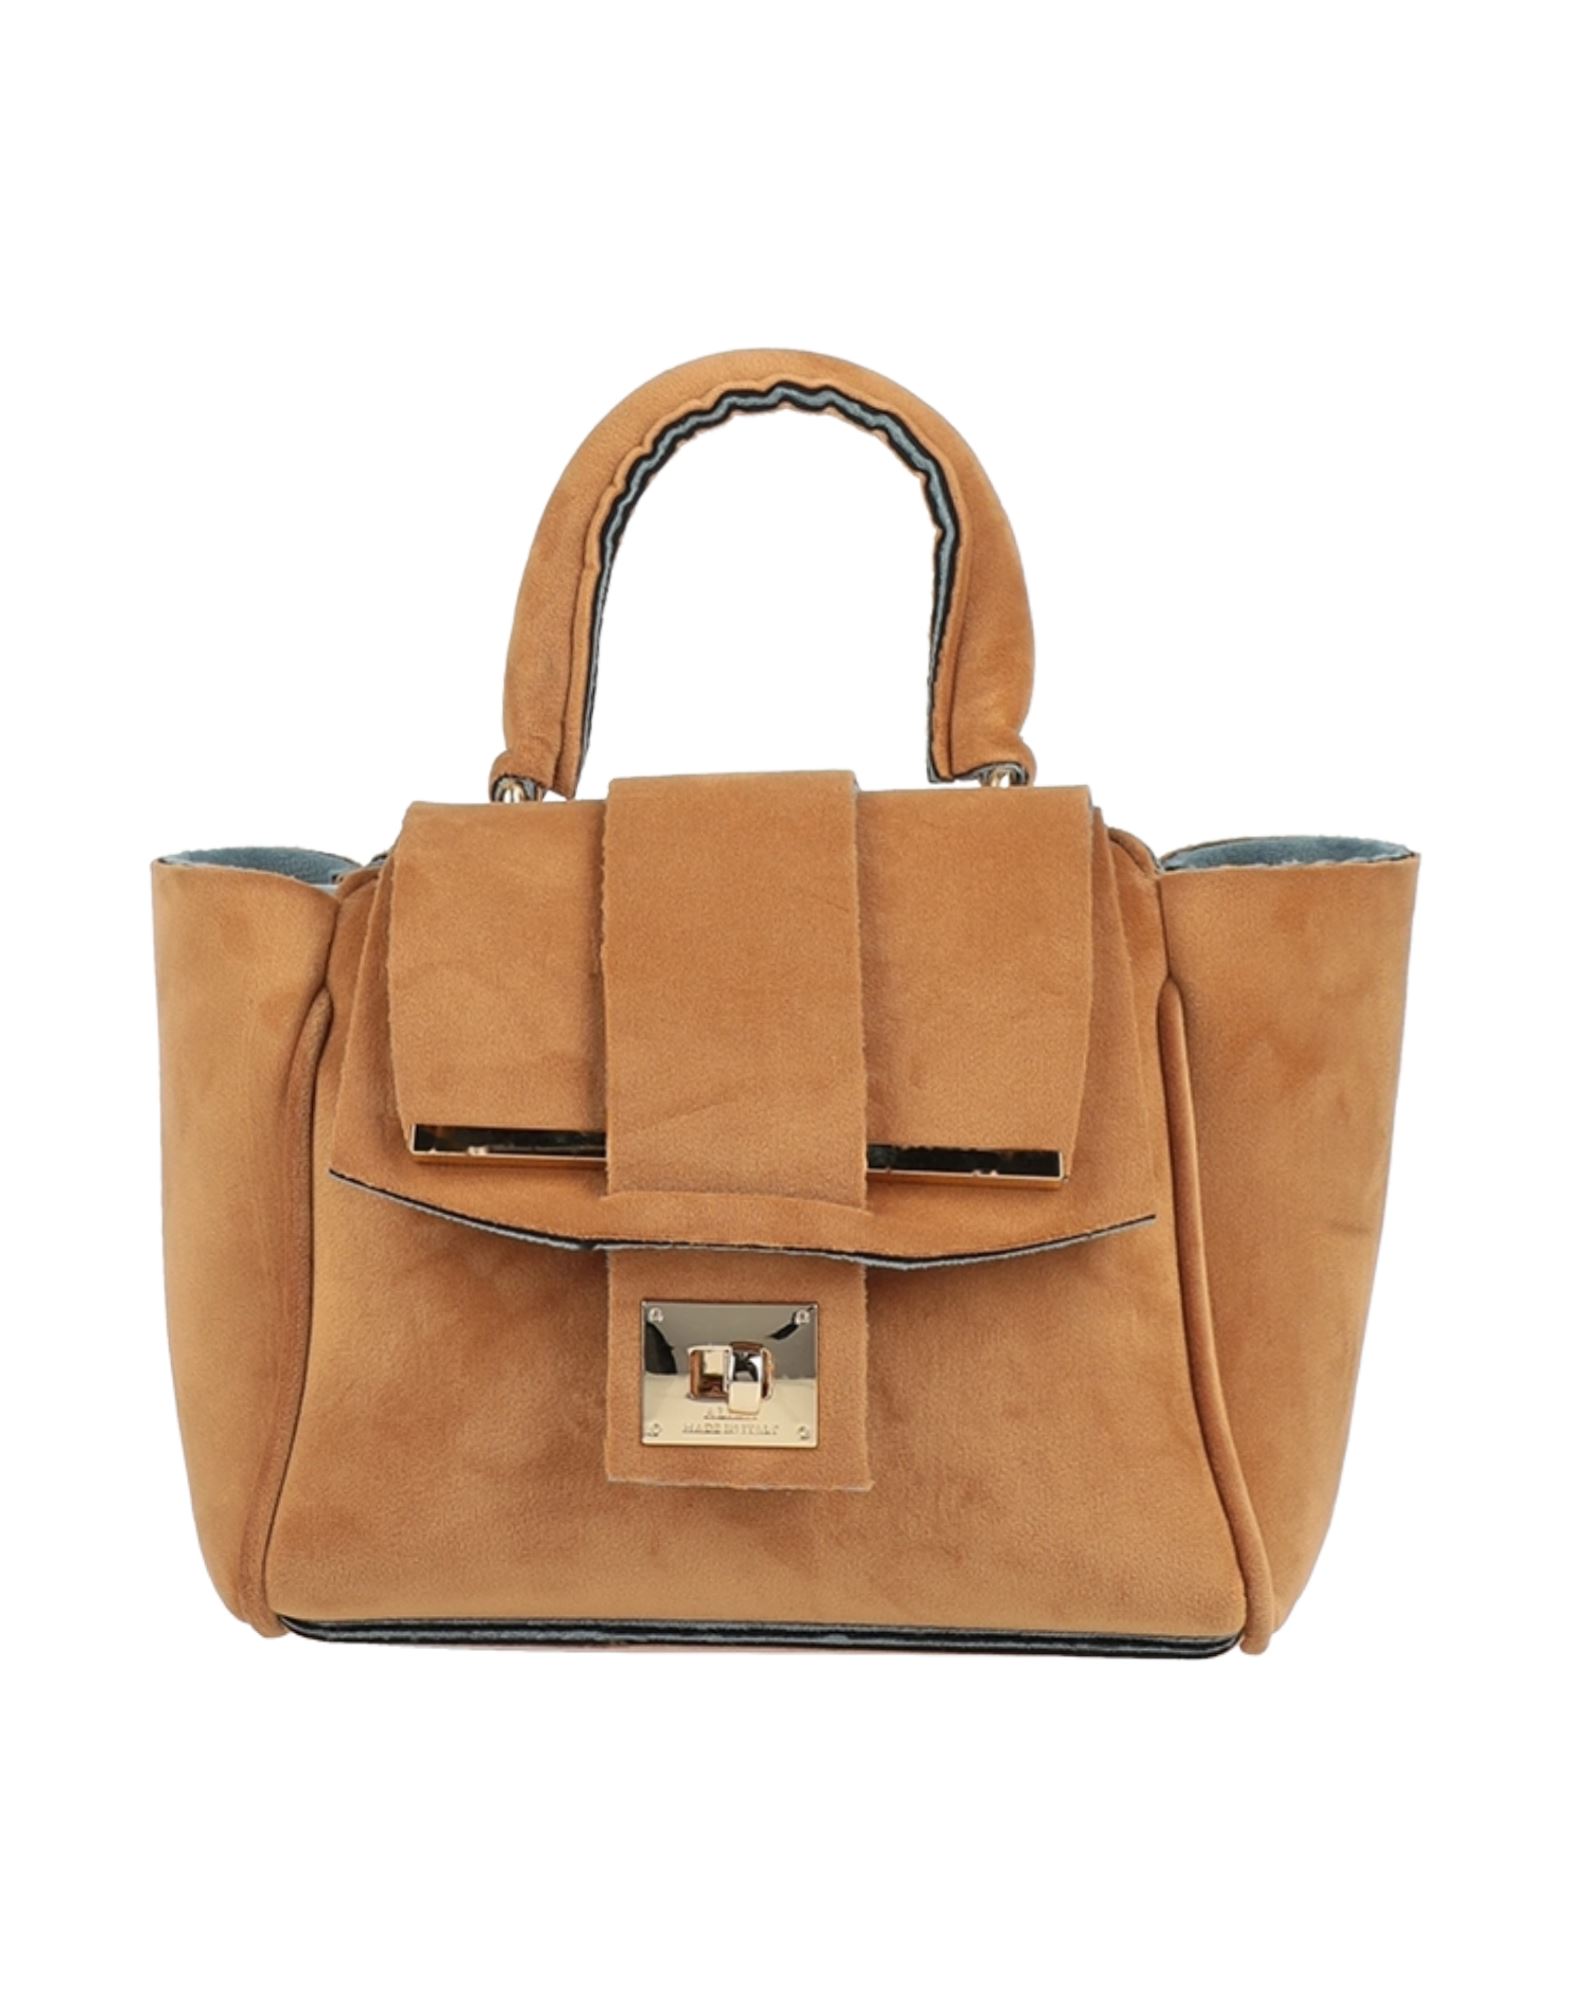 ALILA MADE IN ITALY Handbags